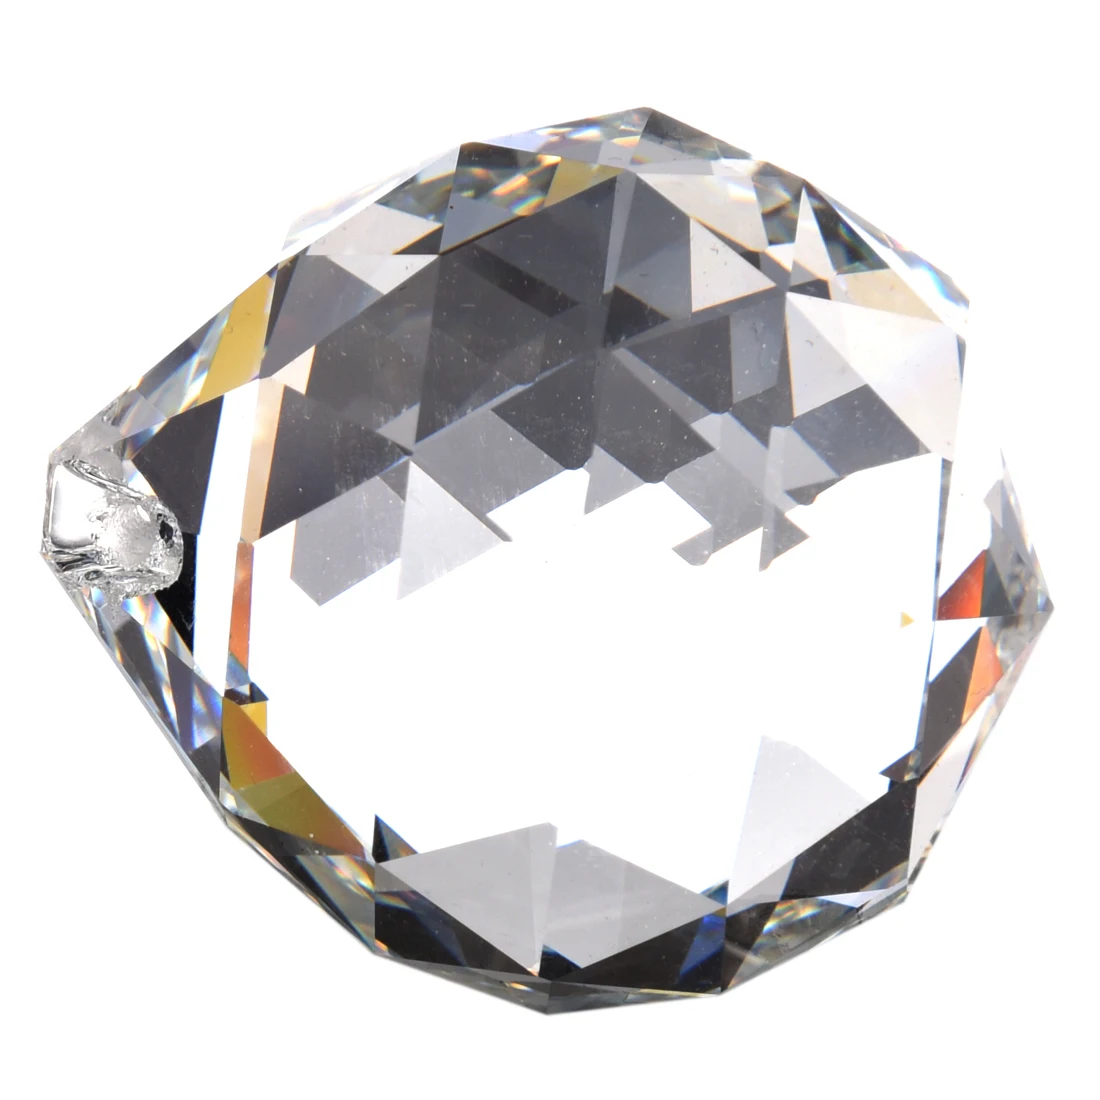 Горячая jfbl 40 мм фэн-шуй граненые декоративные кристаллы мяч(прозрачный